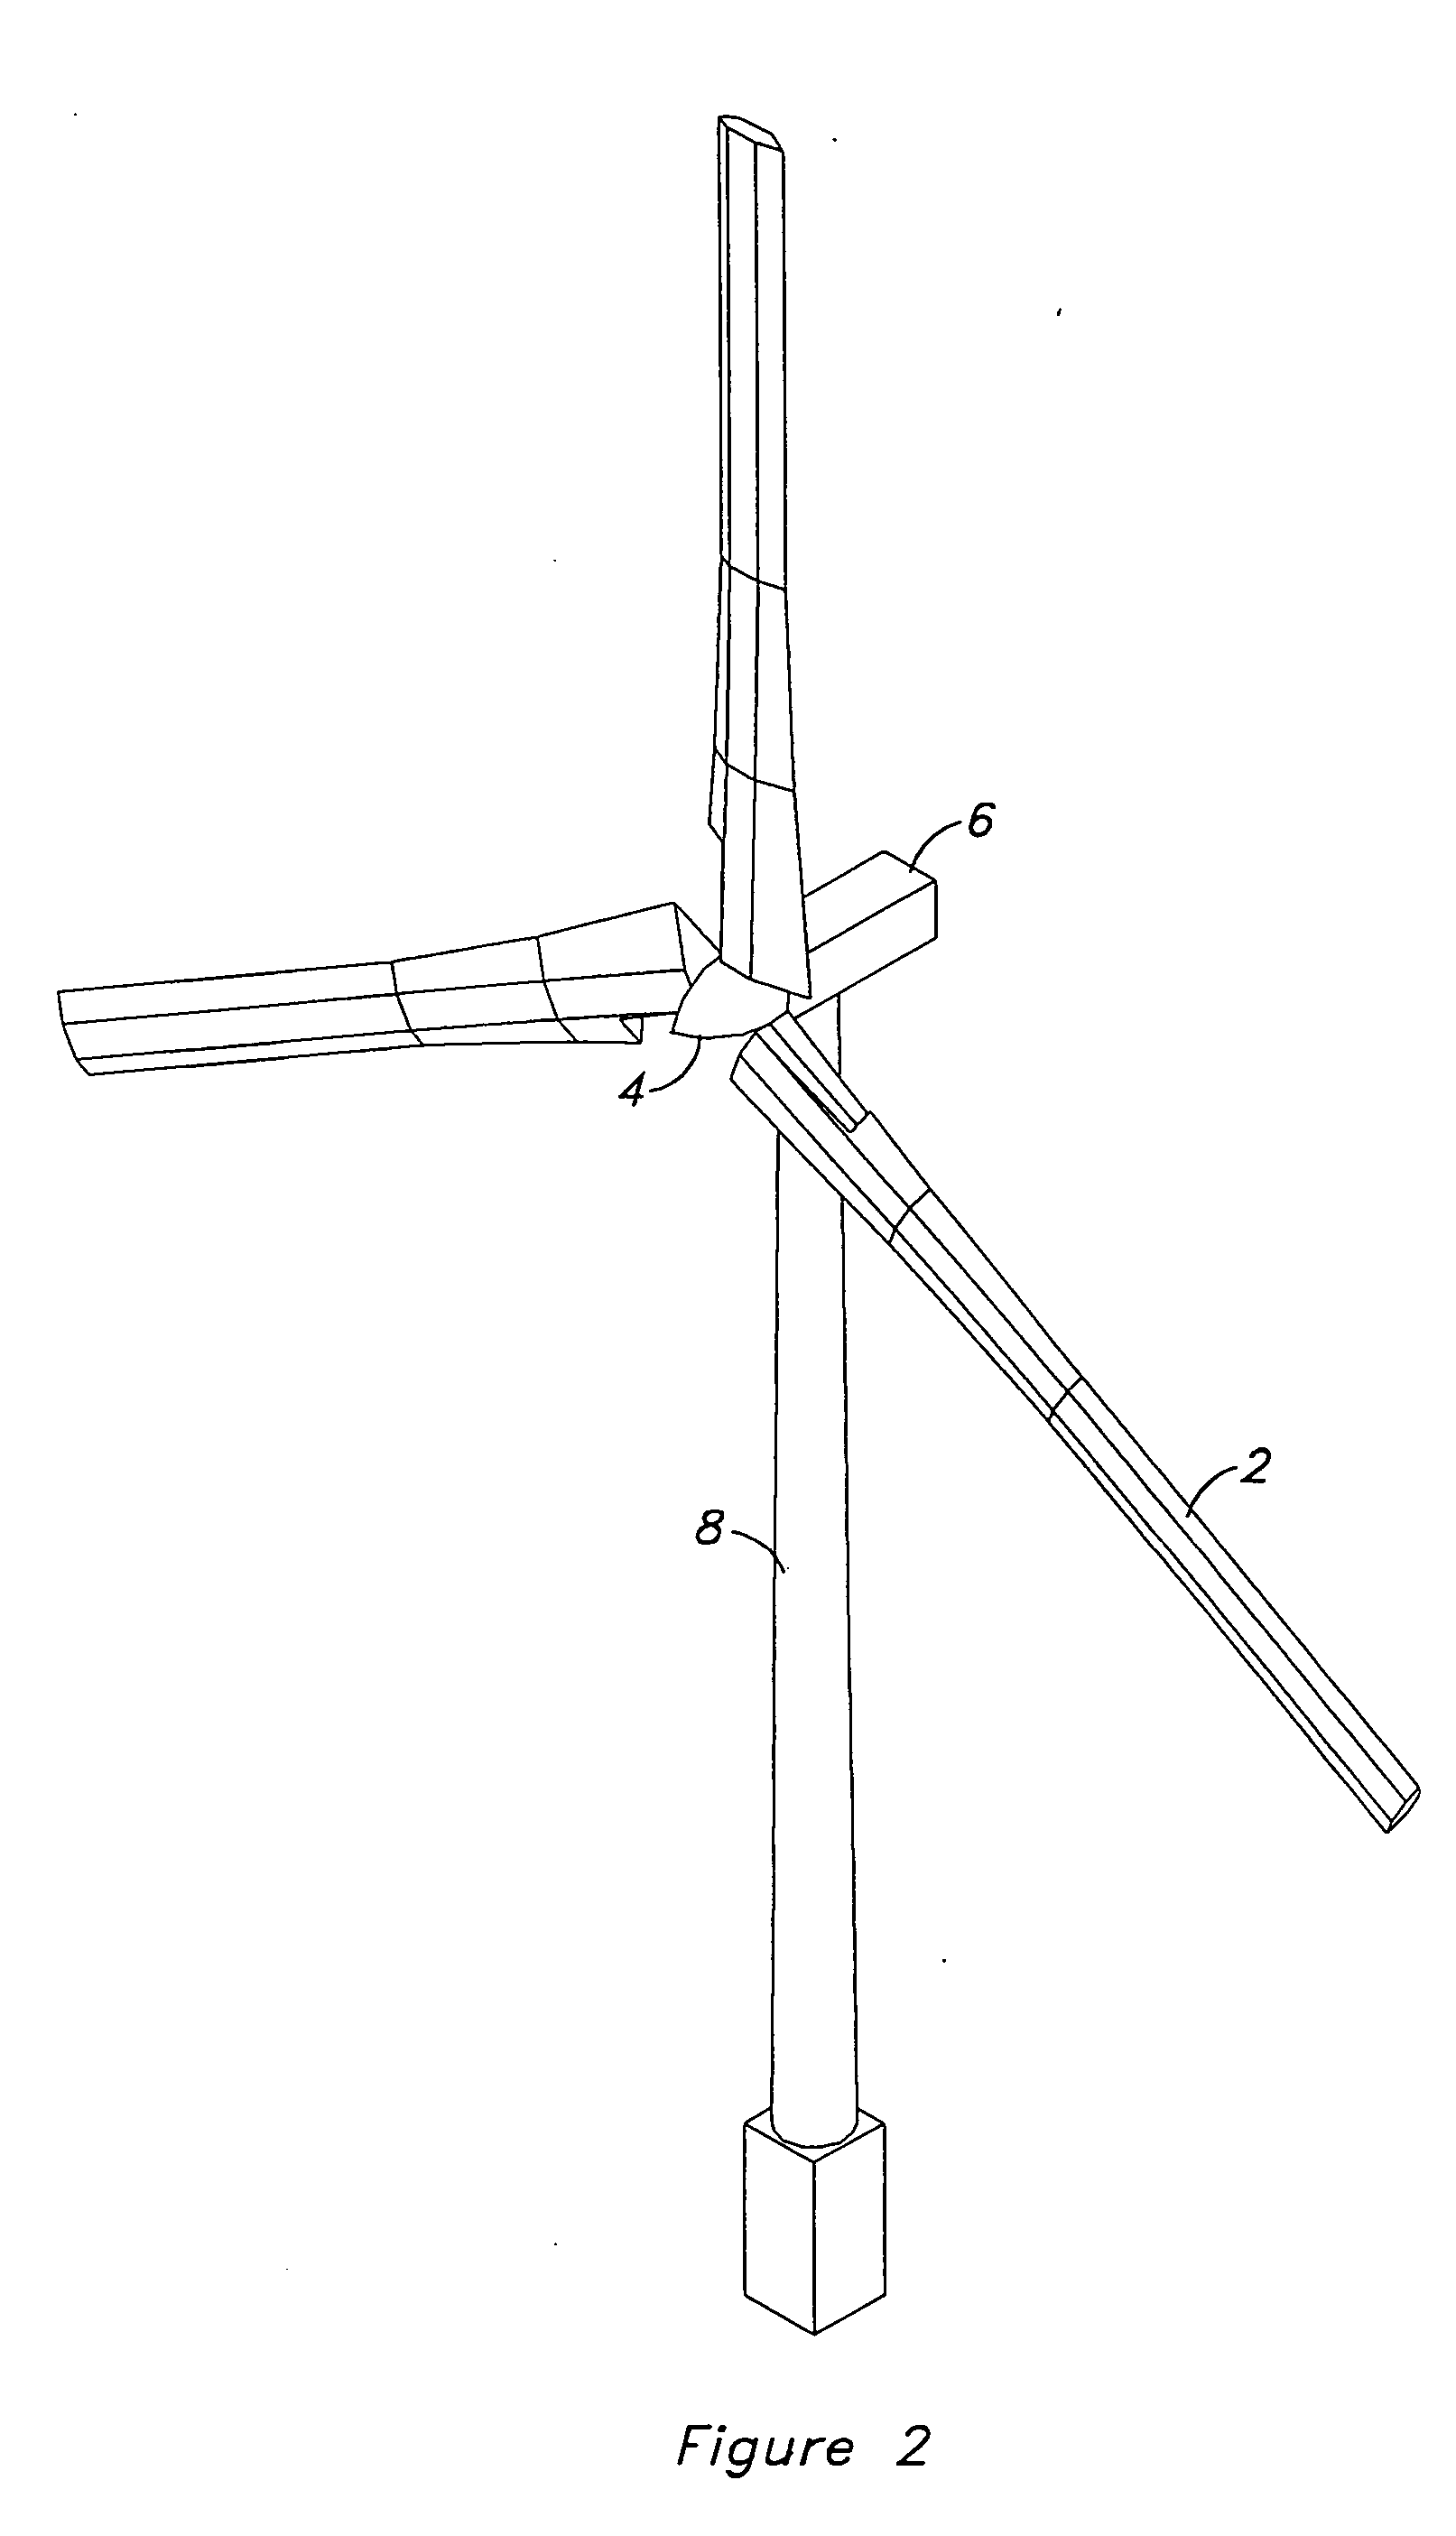 Vertical array wind turbine